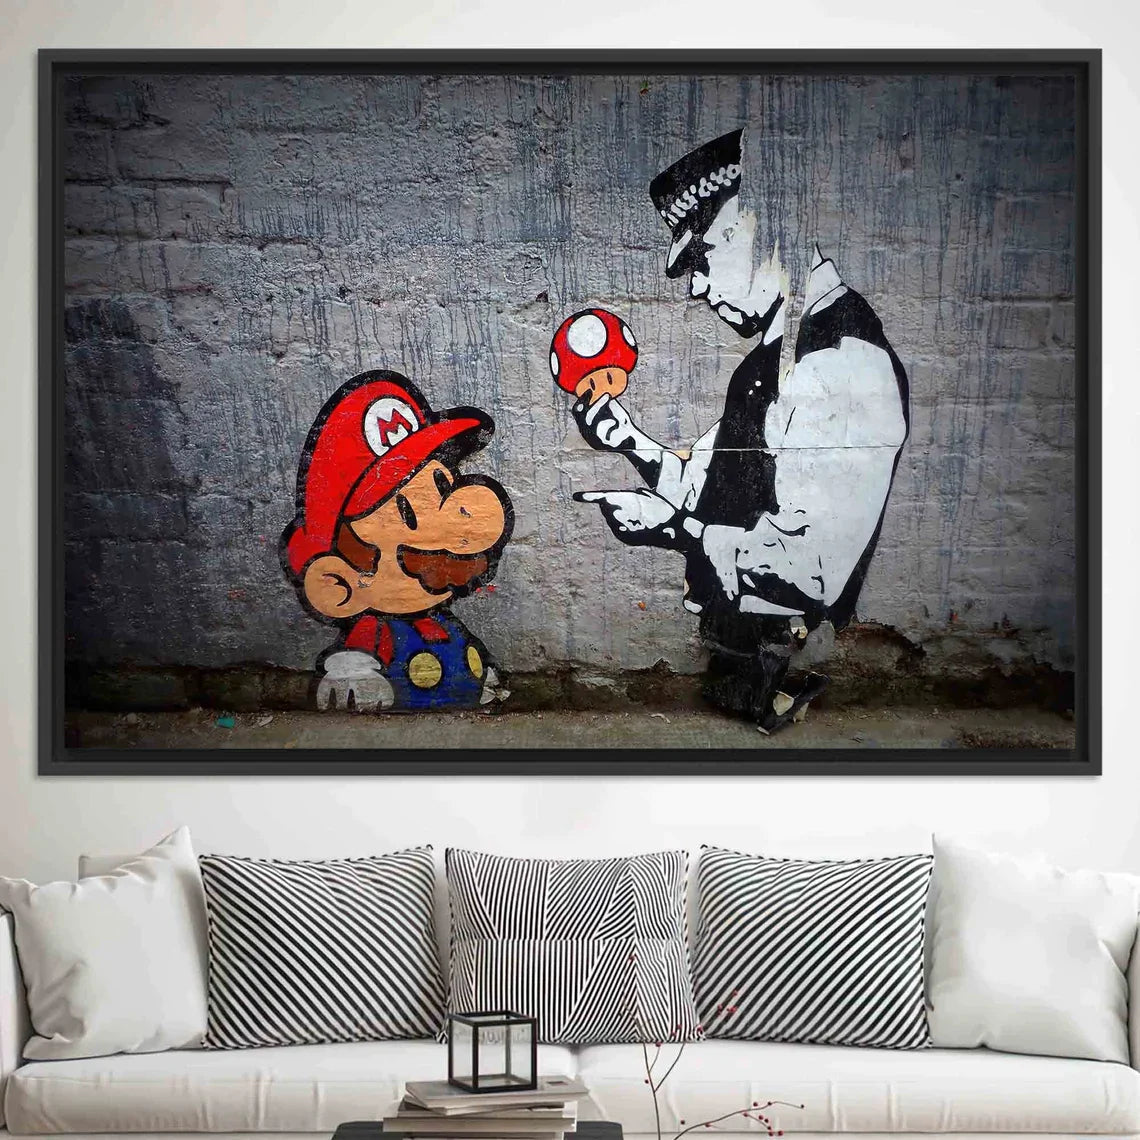 Street Gaming Revolution: Super Mario x Banksy